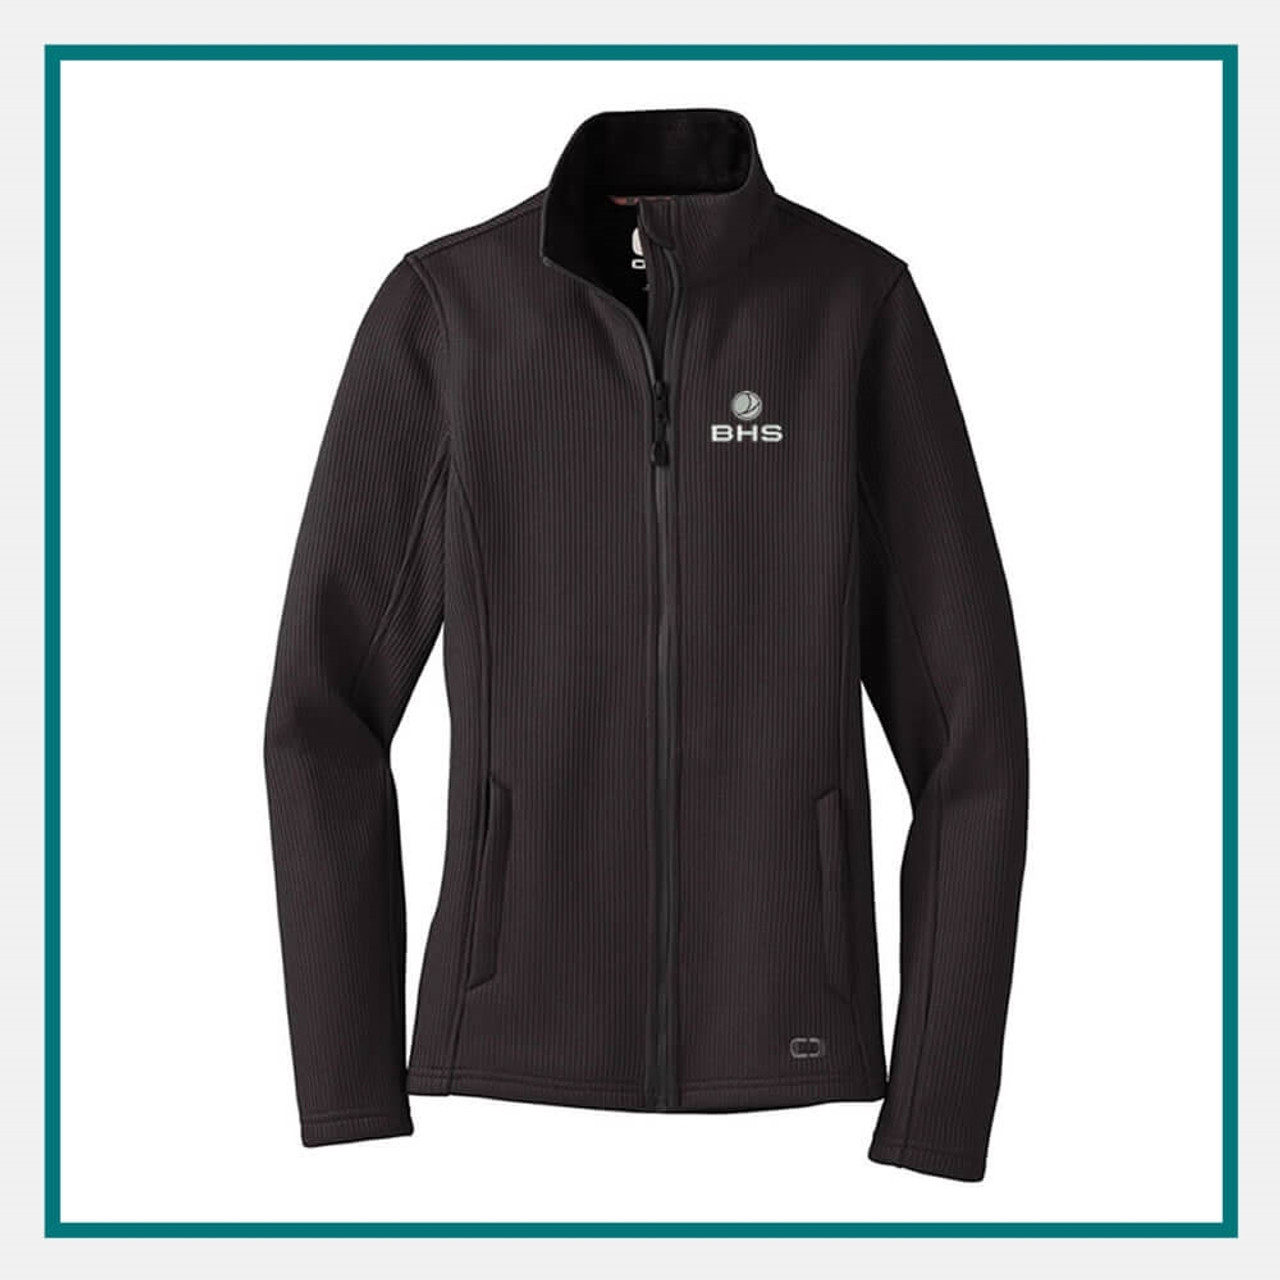 Ladies Monogrammed Fleece Jacket - Personalized Fleece Zip Up Cadet Collar  in Black at  Women's Coats Shop